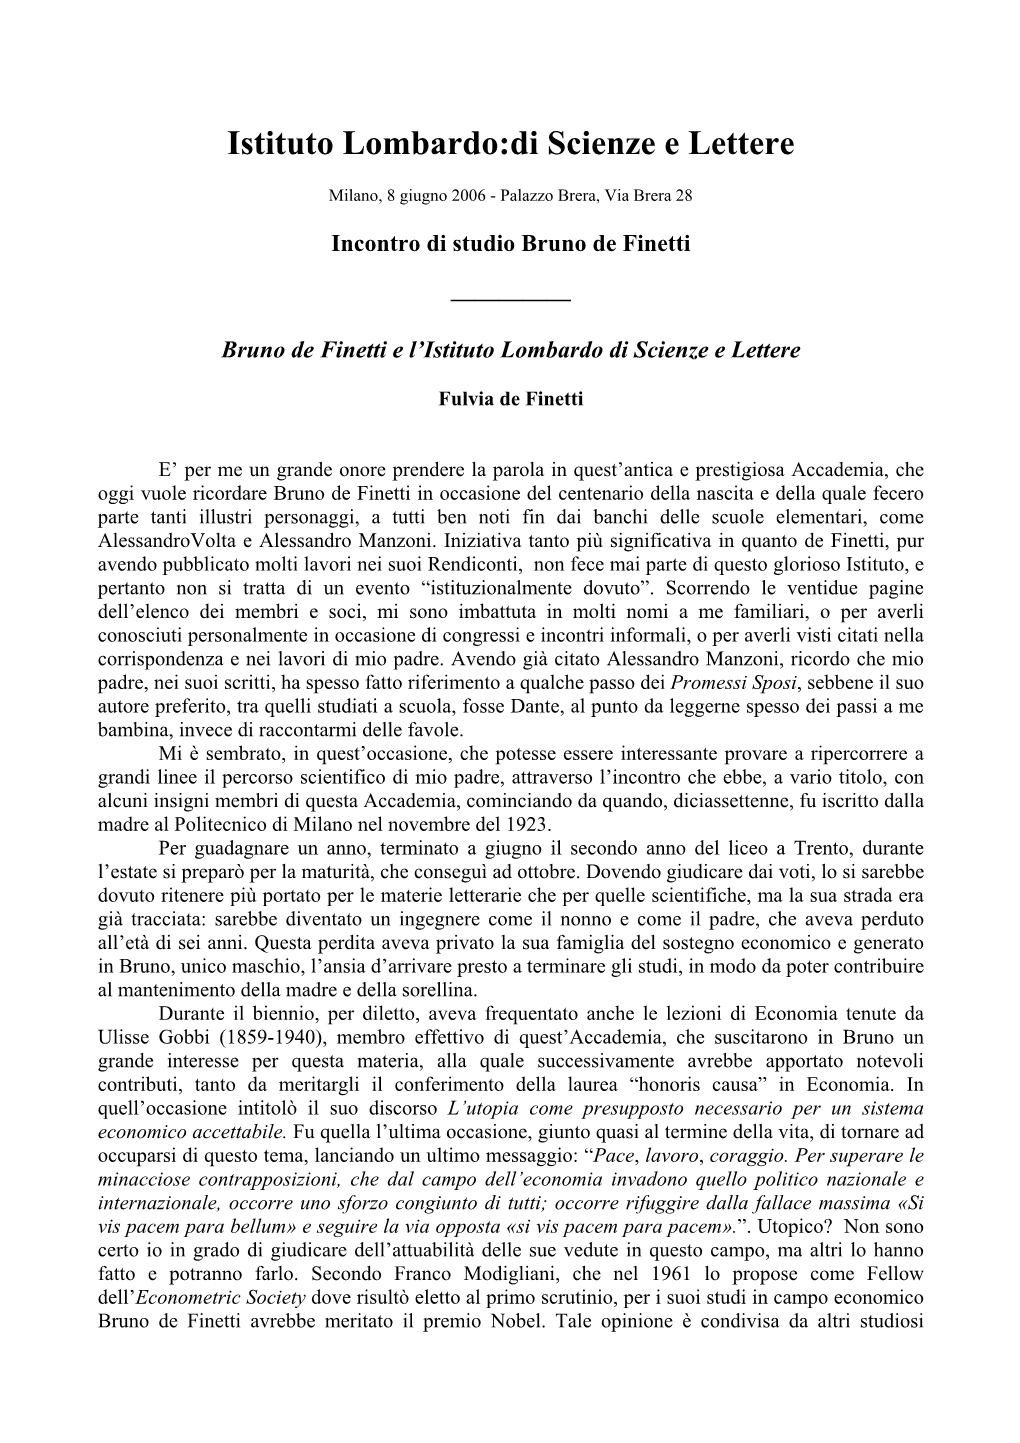 Bruno De Finetti E L'istituto Lombardo Di Scienze E Lettere